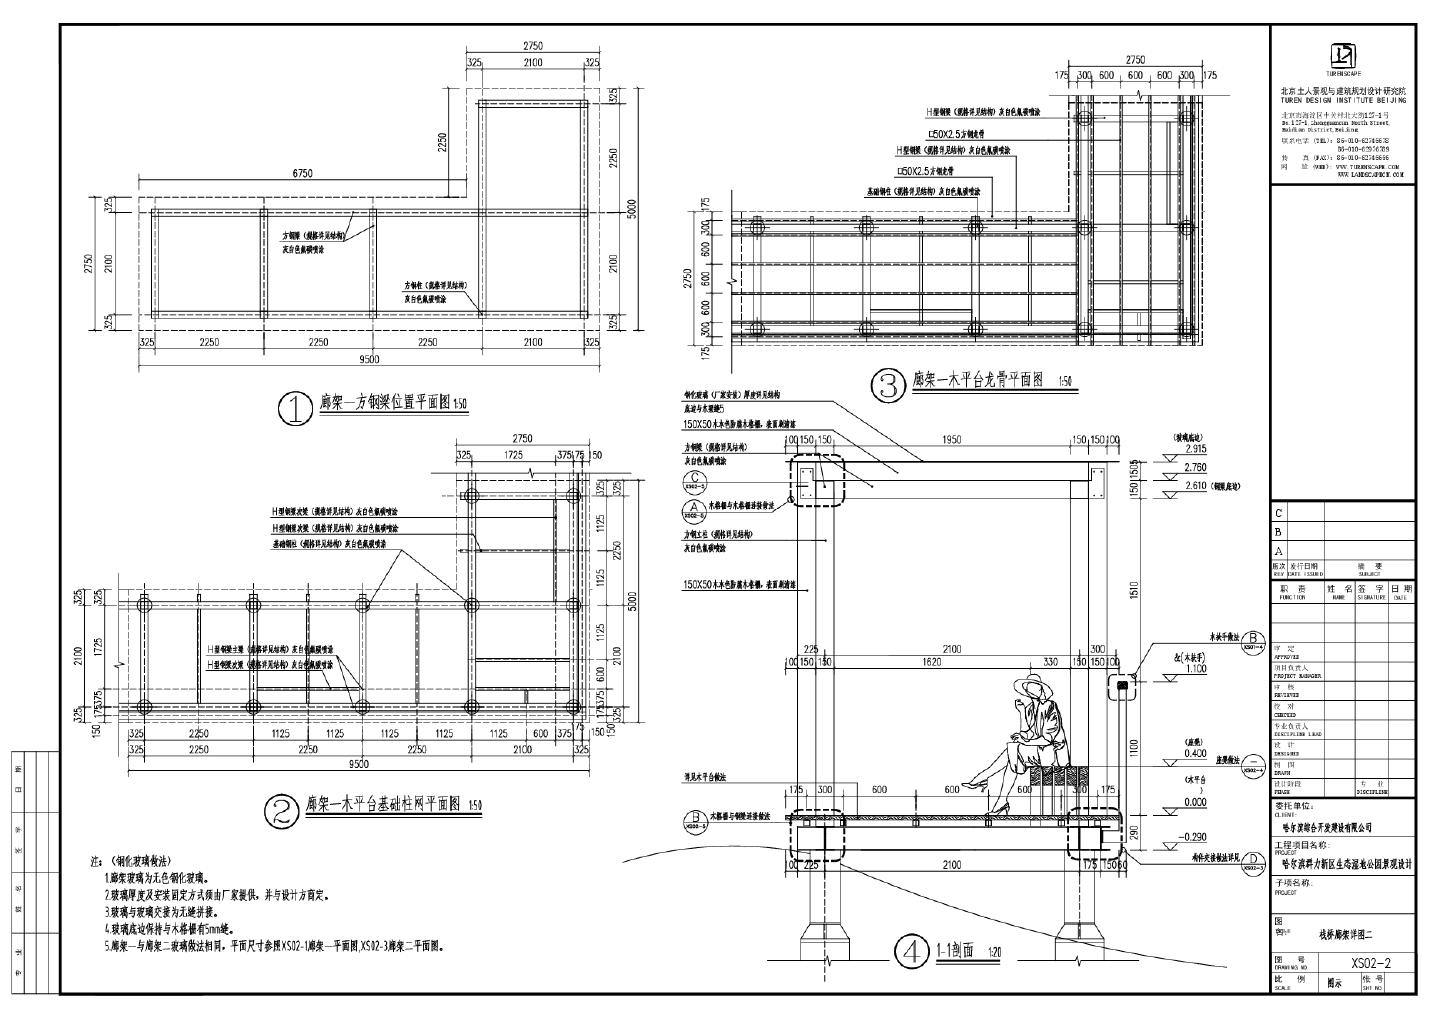 哈尔滨群力新区生态湿地公园景观设计-XS02-1～3空中栈桥廊架详图CAD图